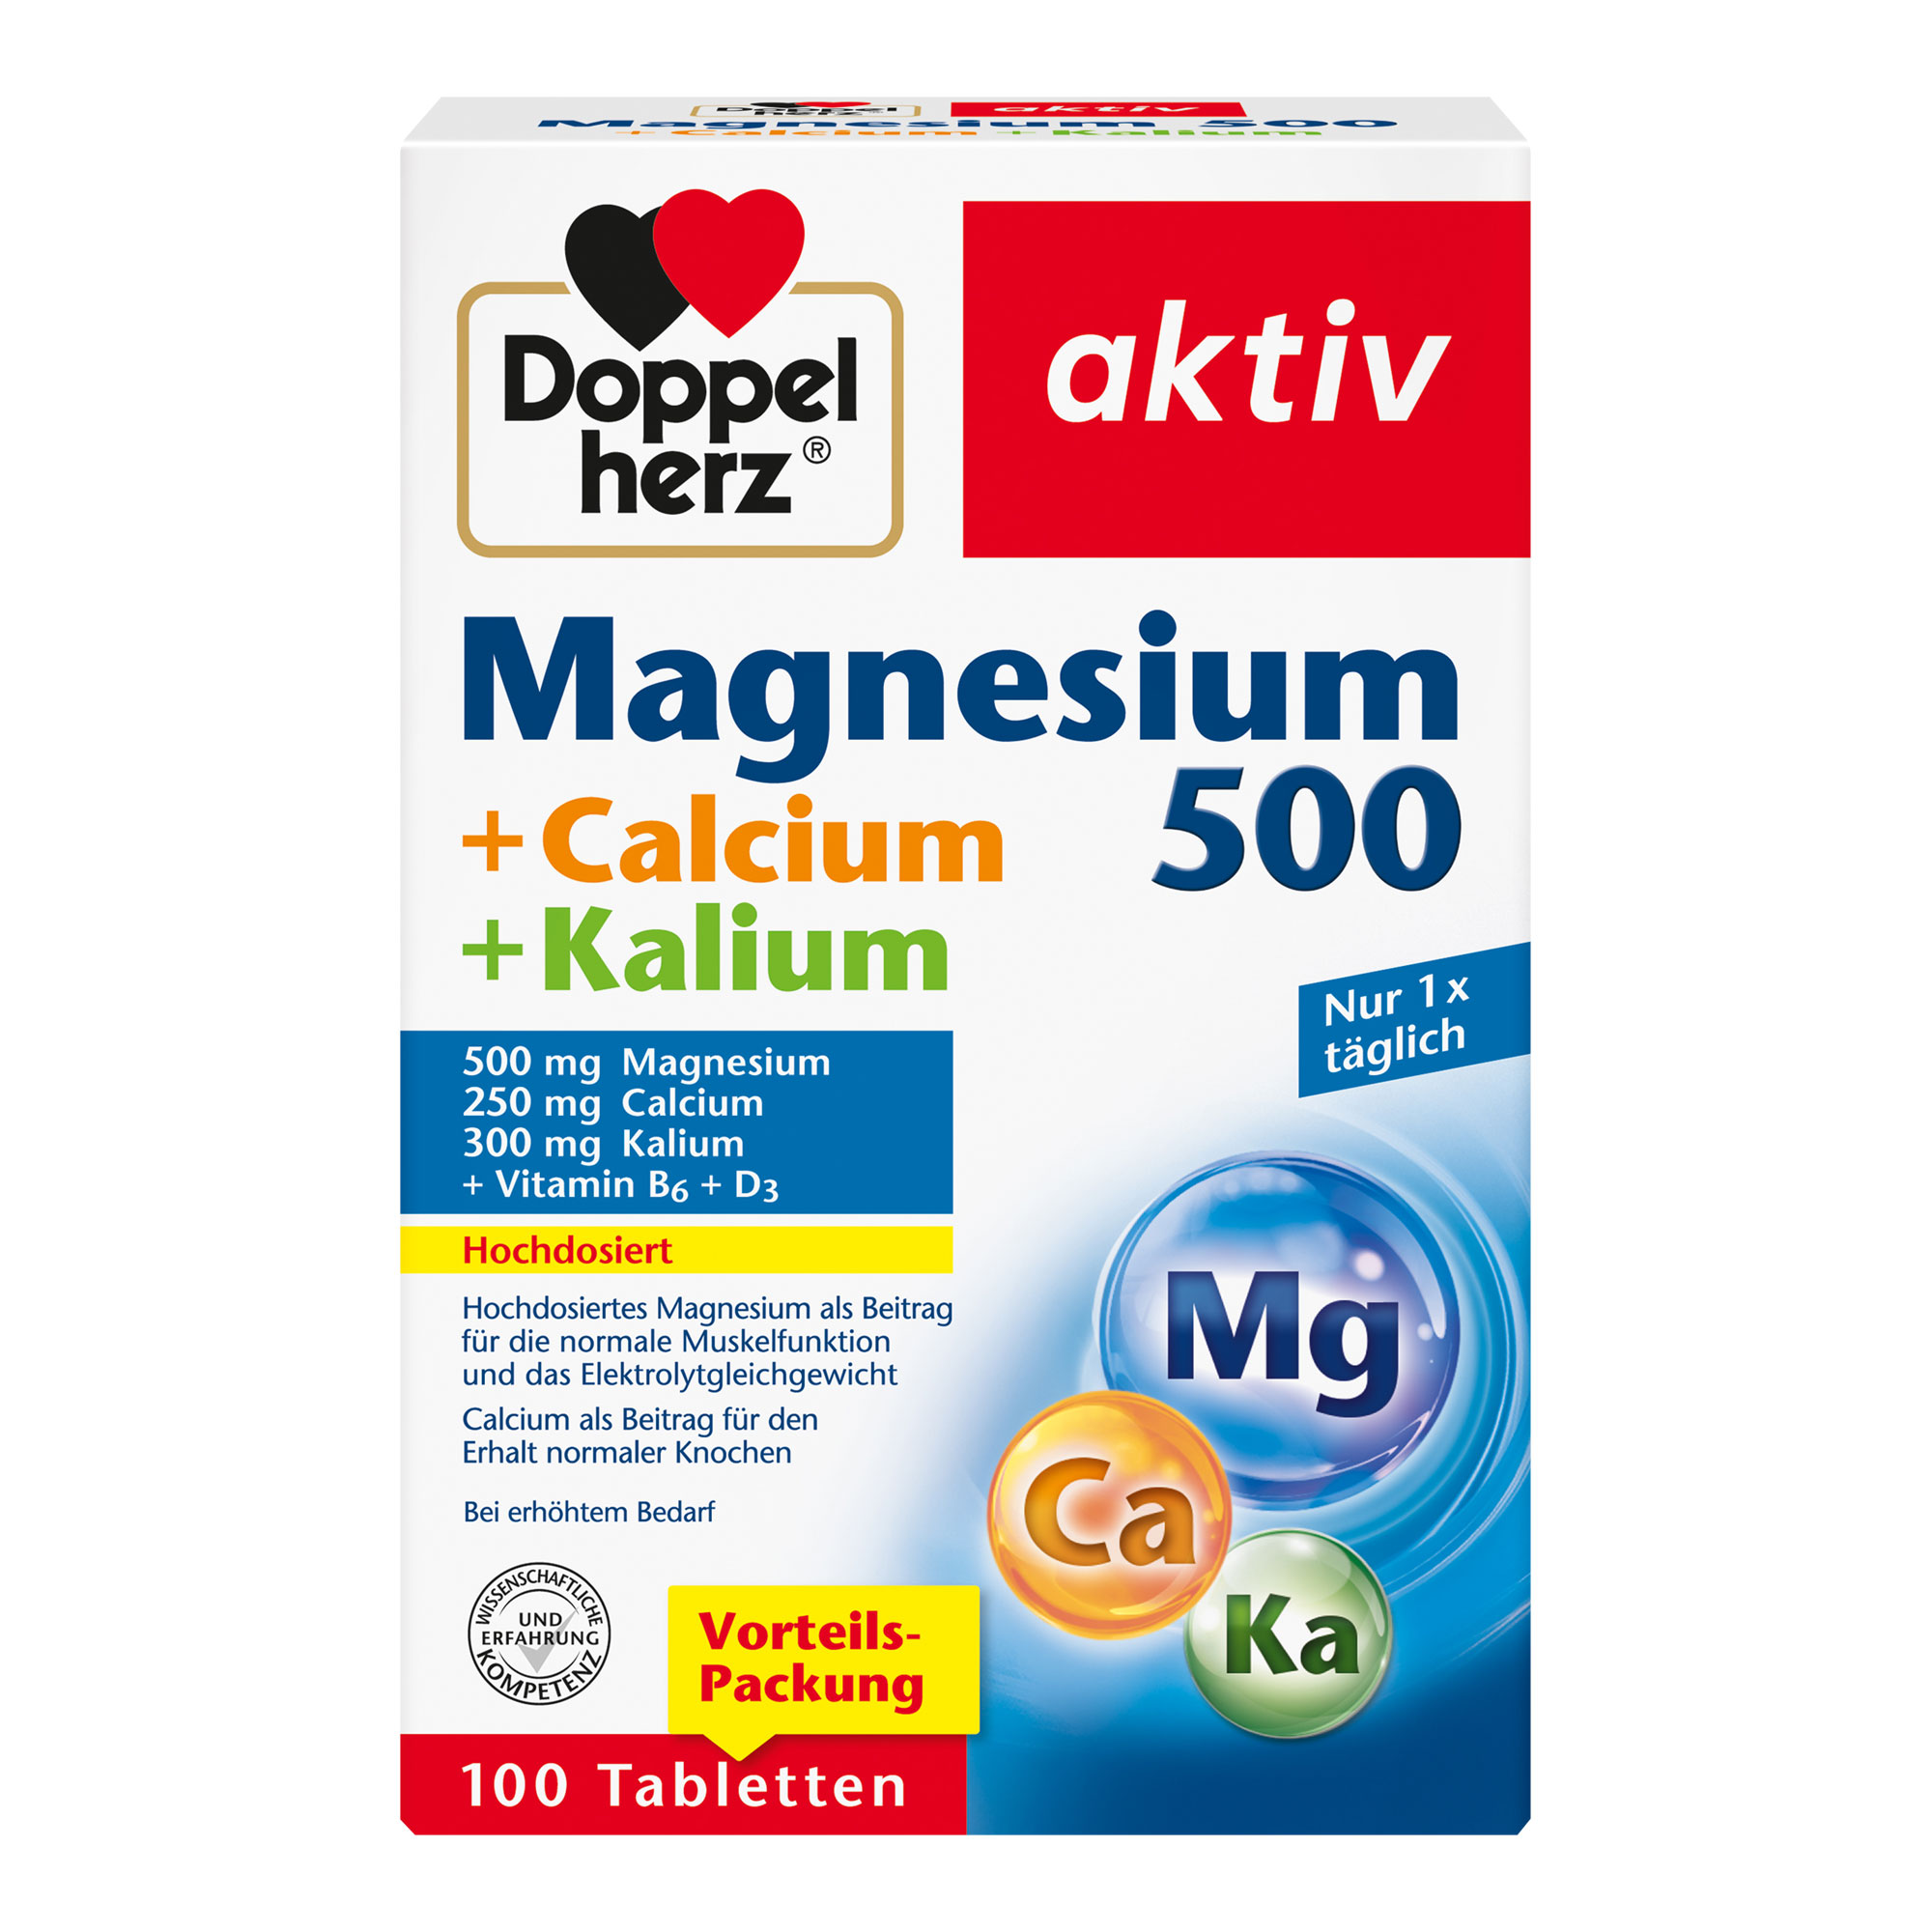 Nahrungsergänzungsmittel mit Magnesium, Calcium, Kalium, Vitamin D und B6. Vorteilspackung.